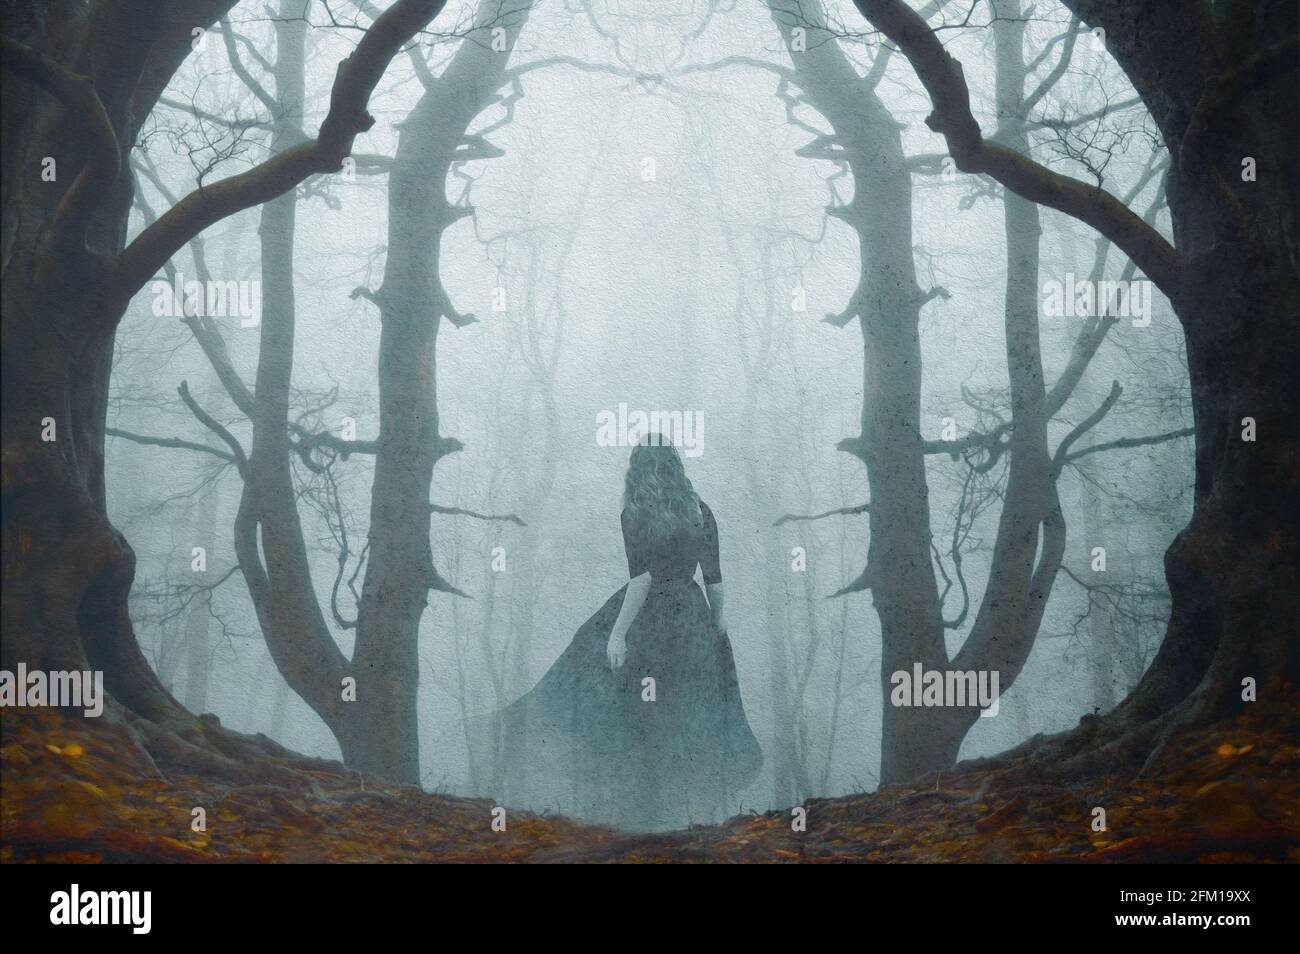 Ein übernatürliches Konzept einer geisterhaften Frau in einem langen Kleid, die im Winter durch einen gespenstischen, nebligen Wald geht. Mit einem Grunge, vintage bearbeiten. Stockfoto